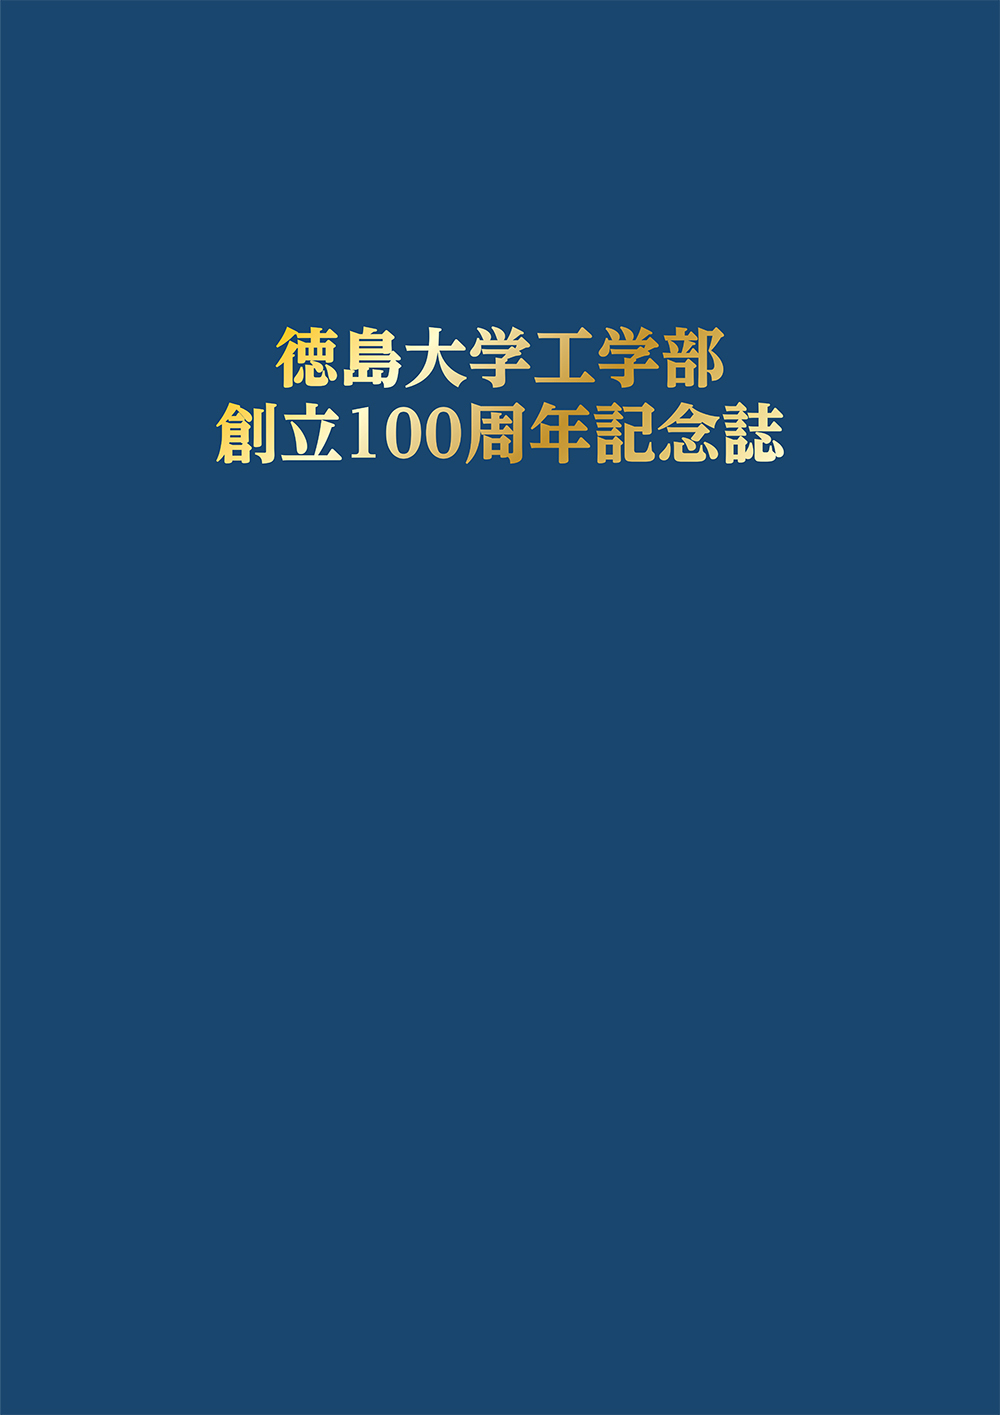 徳島大学工学部100周年記念誌表紙